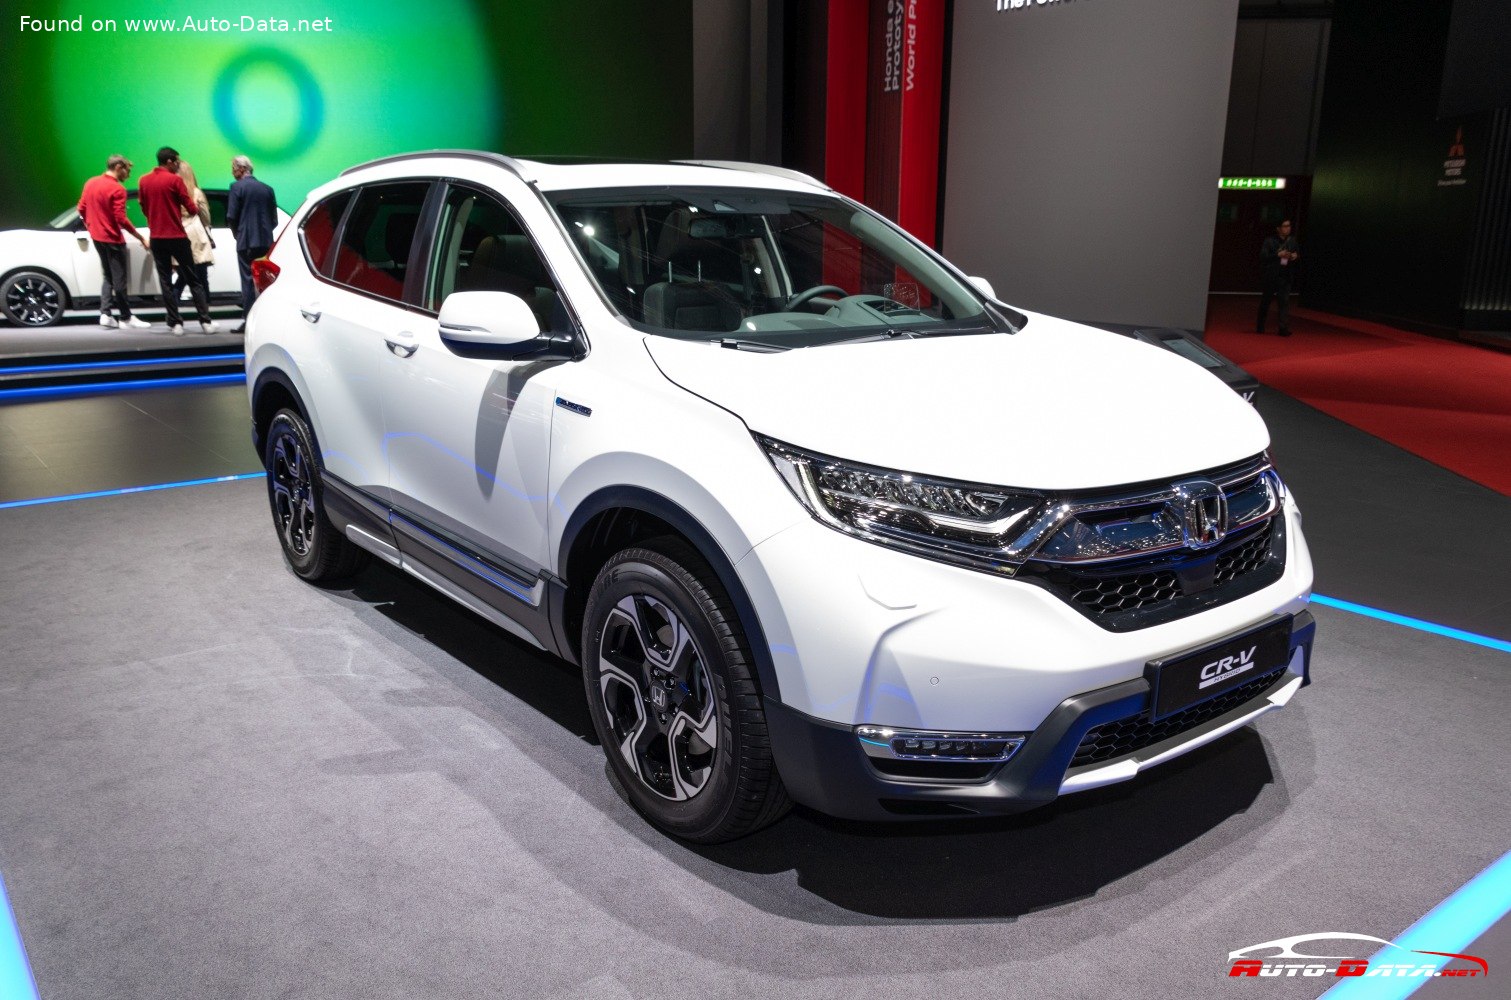 2018 Honda CRV V 1.5 VTEC TURBO (173 KM) Dane